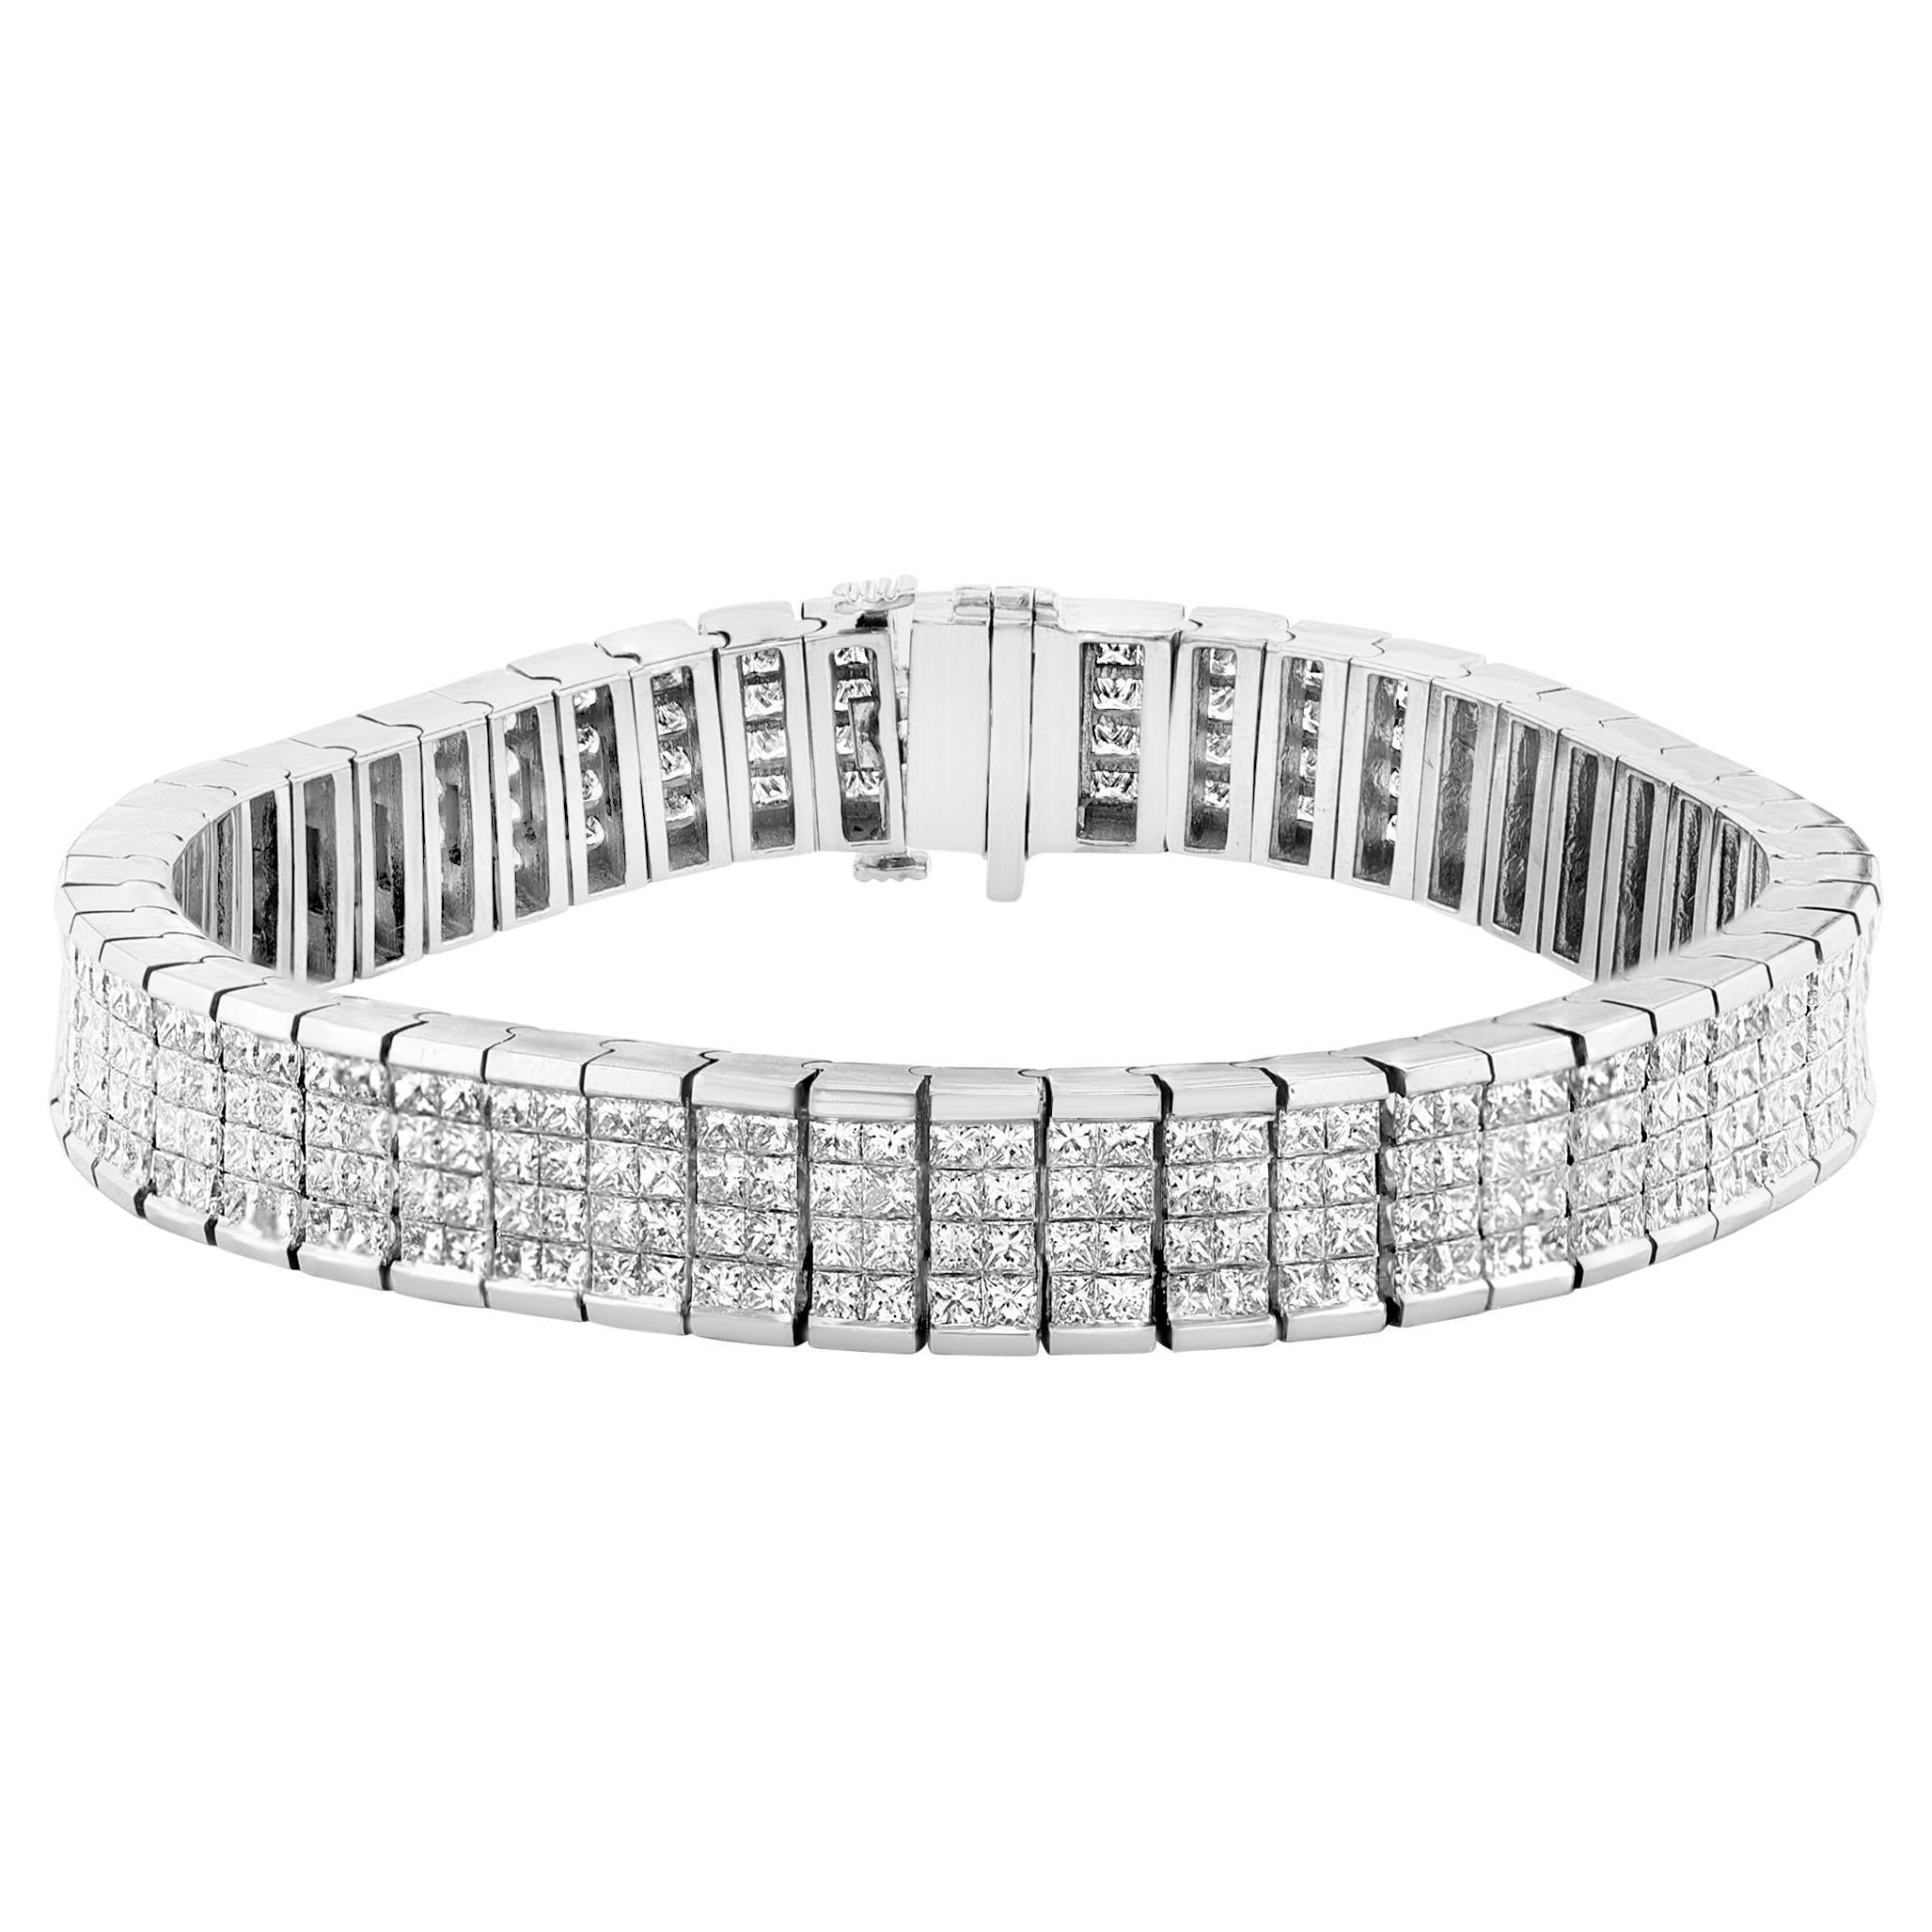 24 Carats Four Row Princess Cut Diamond Tennis Bracelet 18kt White Gold 7.3" For Sale